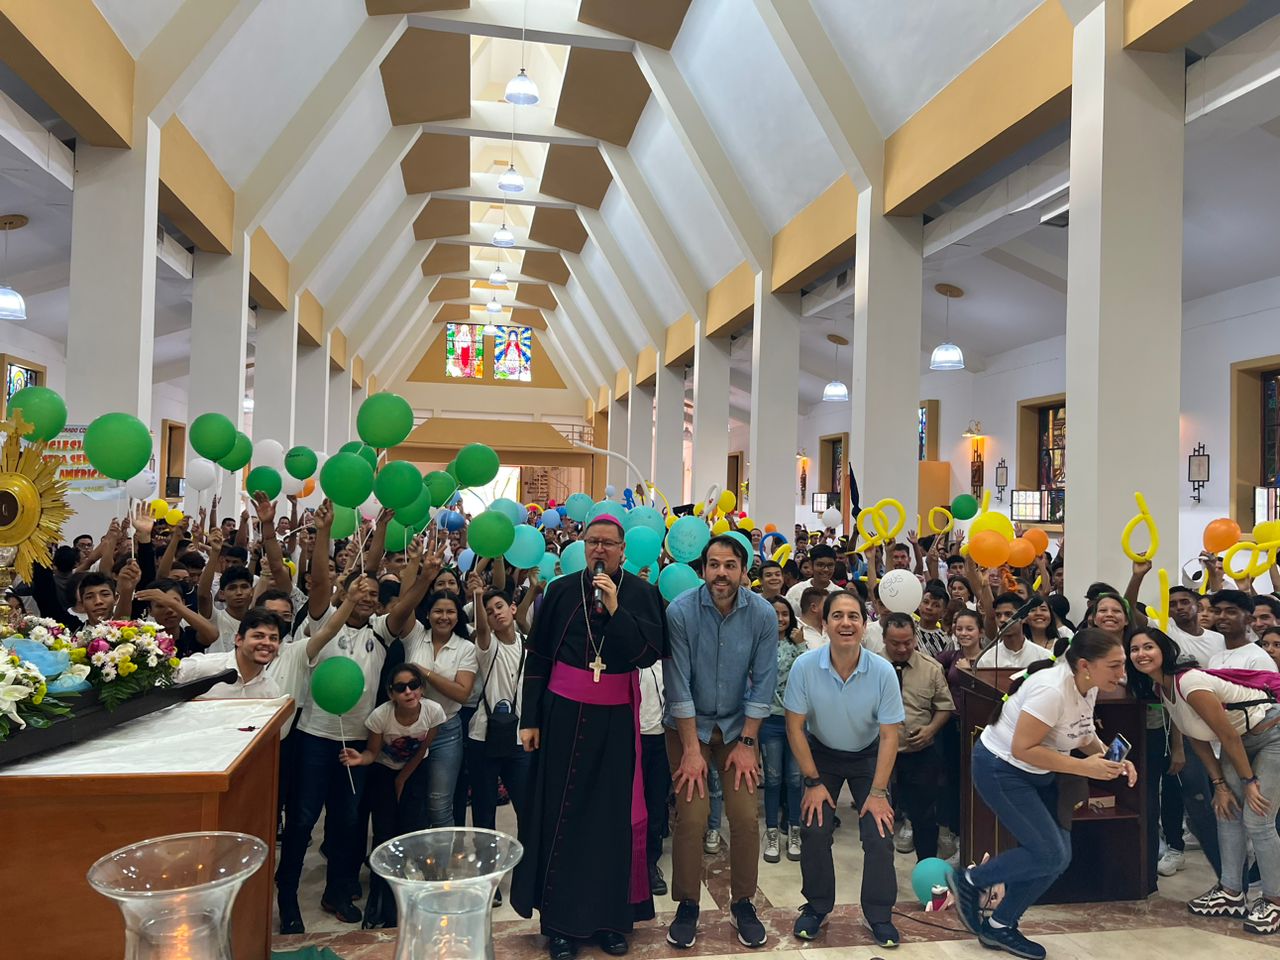 Venezuela: A pesar de las dificultades, la Iglesia está viva, unida y alegre   